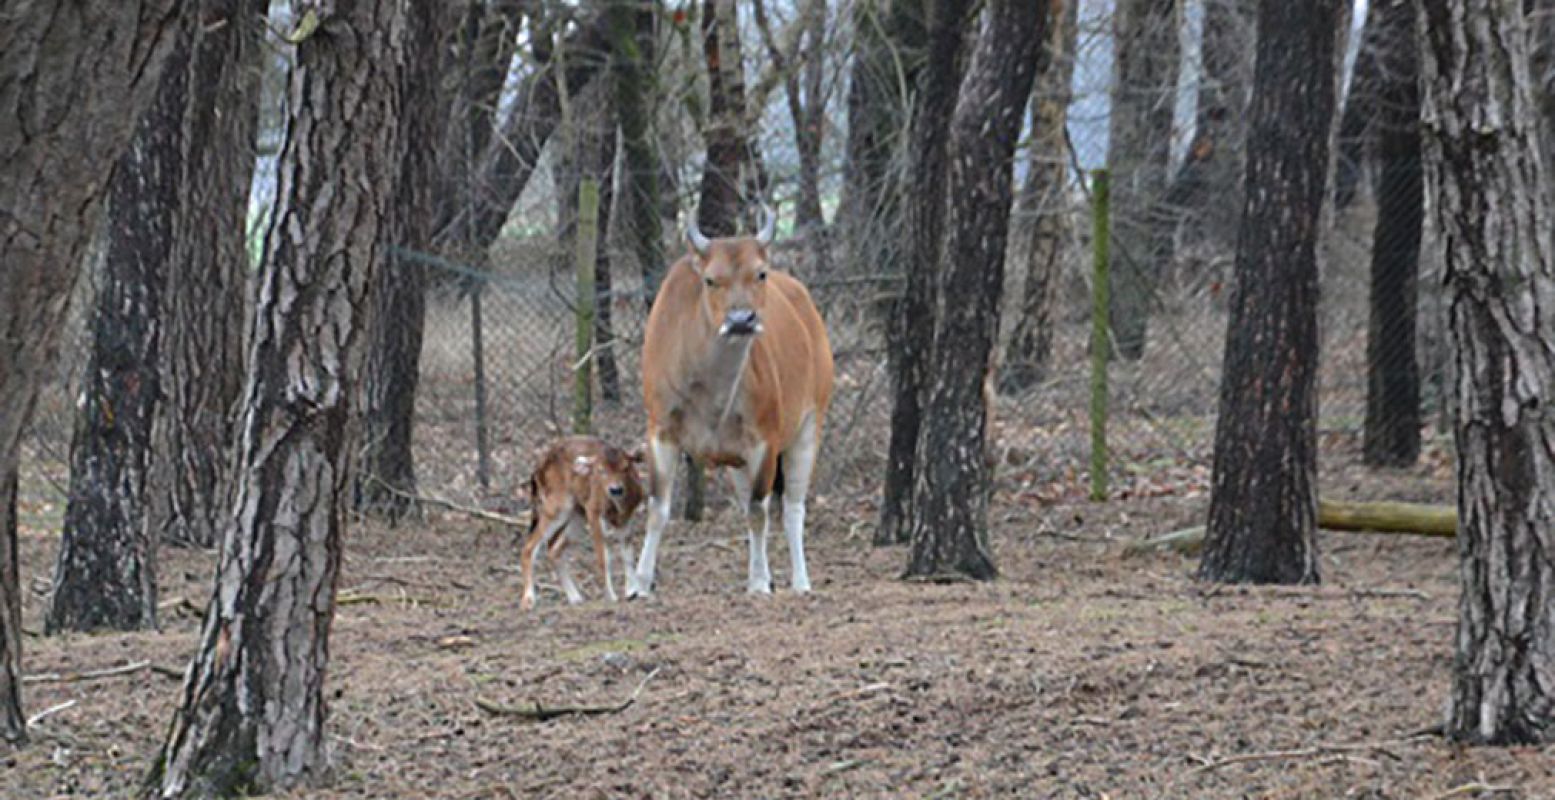 Bij de kudde bantengs in Safaripark Beekse Bergen loopt een kalfje mee! Foto: Safaripark Beekse Bergen